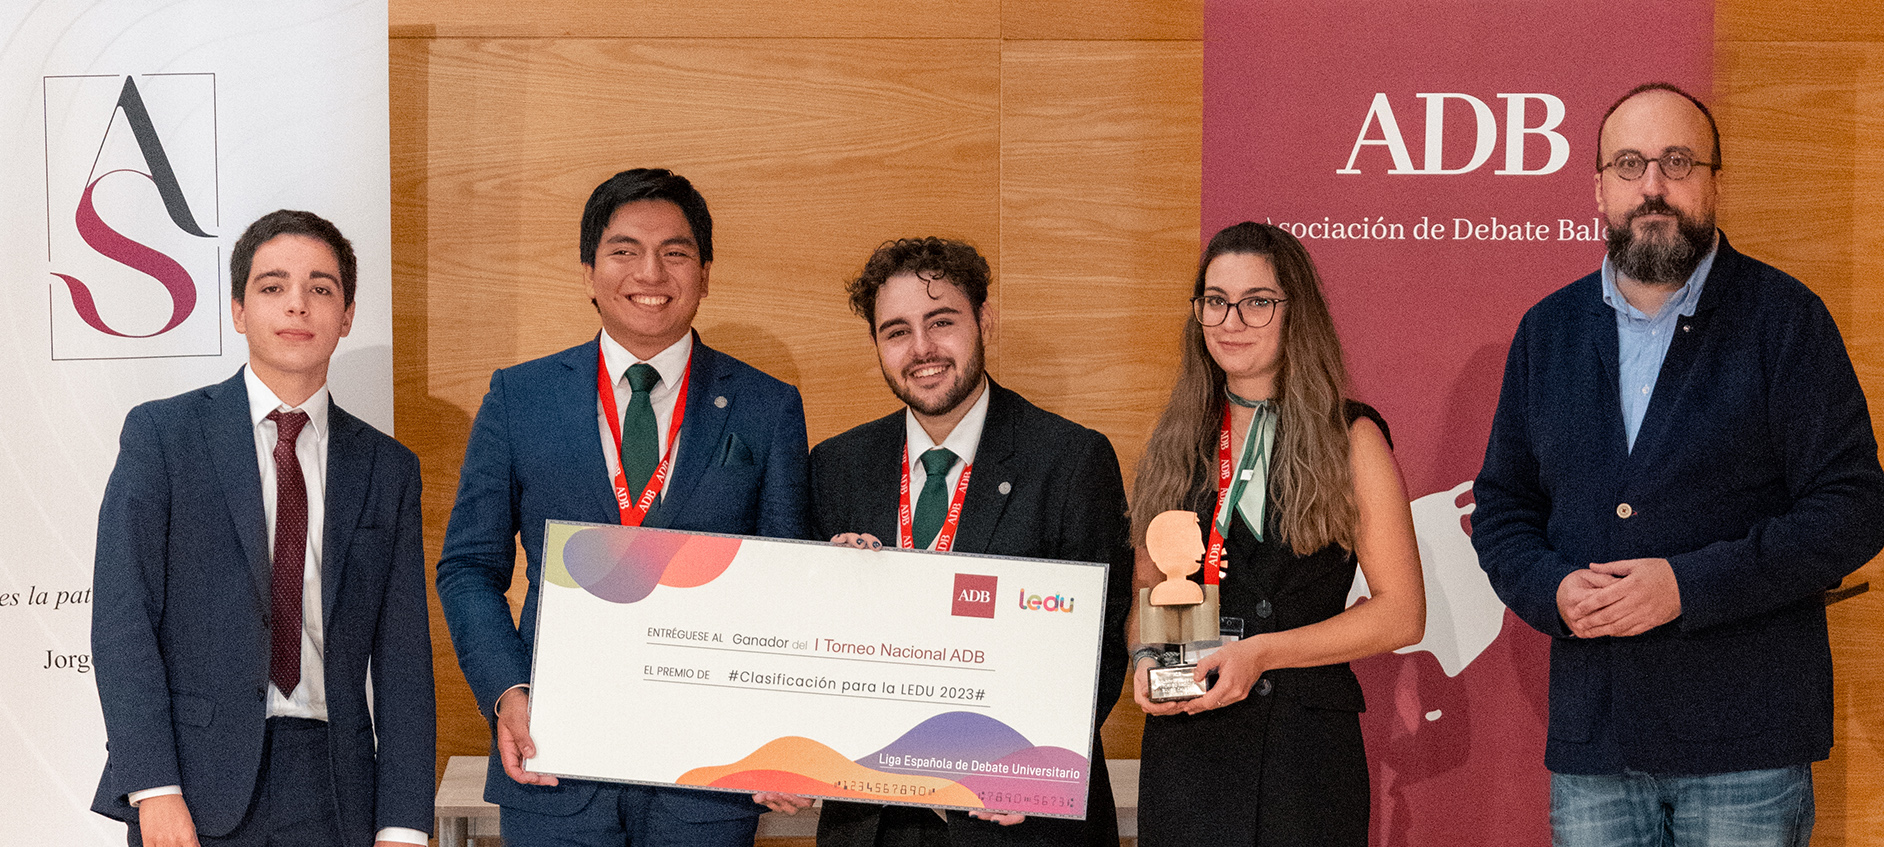 La Universidad de Jaén gana el I Torneo Nacional de Debate Académico de ADB